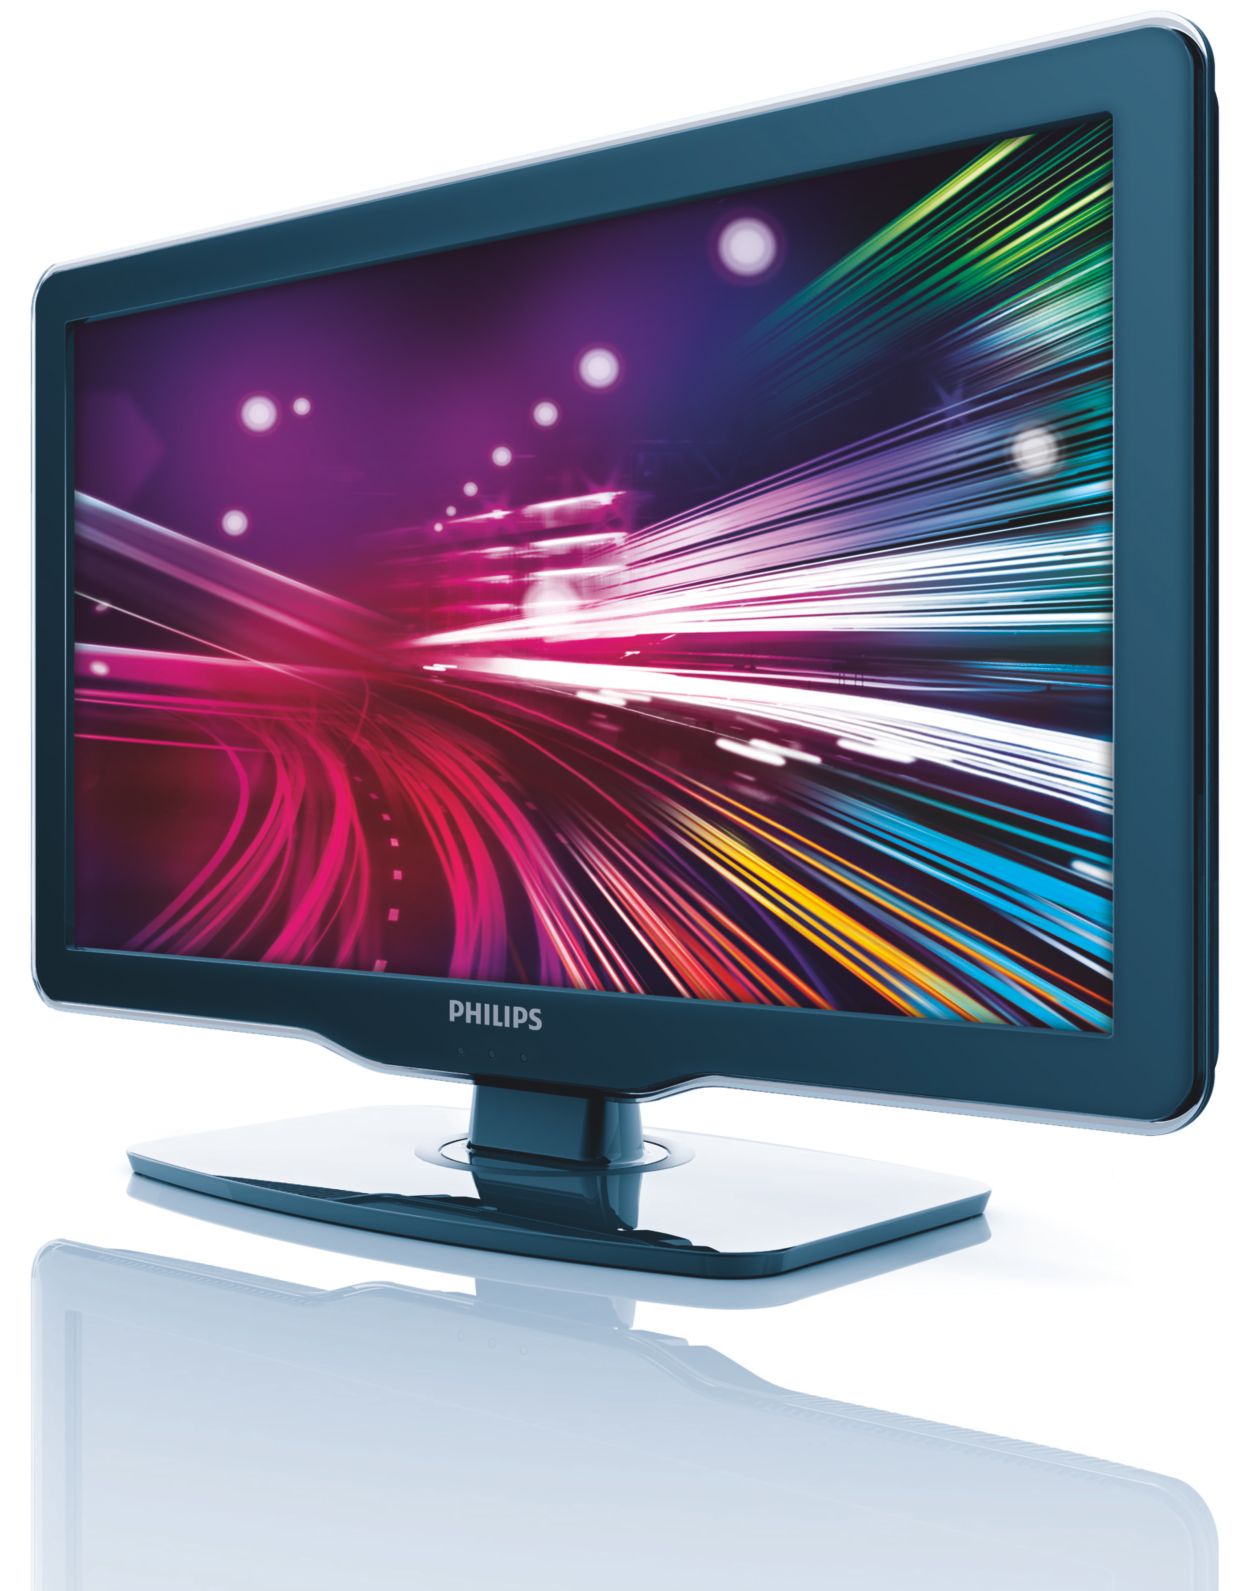 Pantalla LCD de 15 pulgadas, resolución de 1024 x 768, monitor de PC HDMI,  pantalla a color, monitor de seguridad para el hogar con entrada de